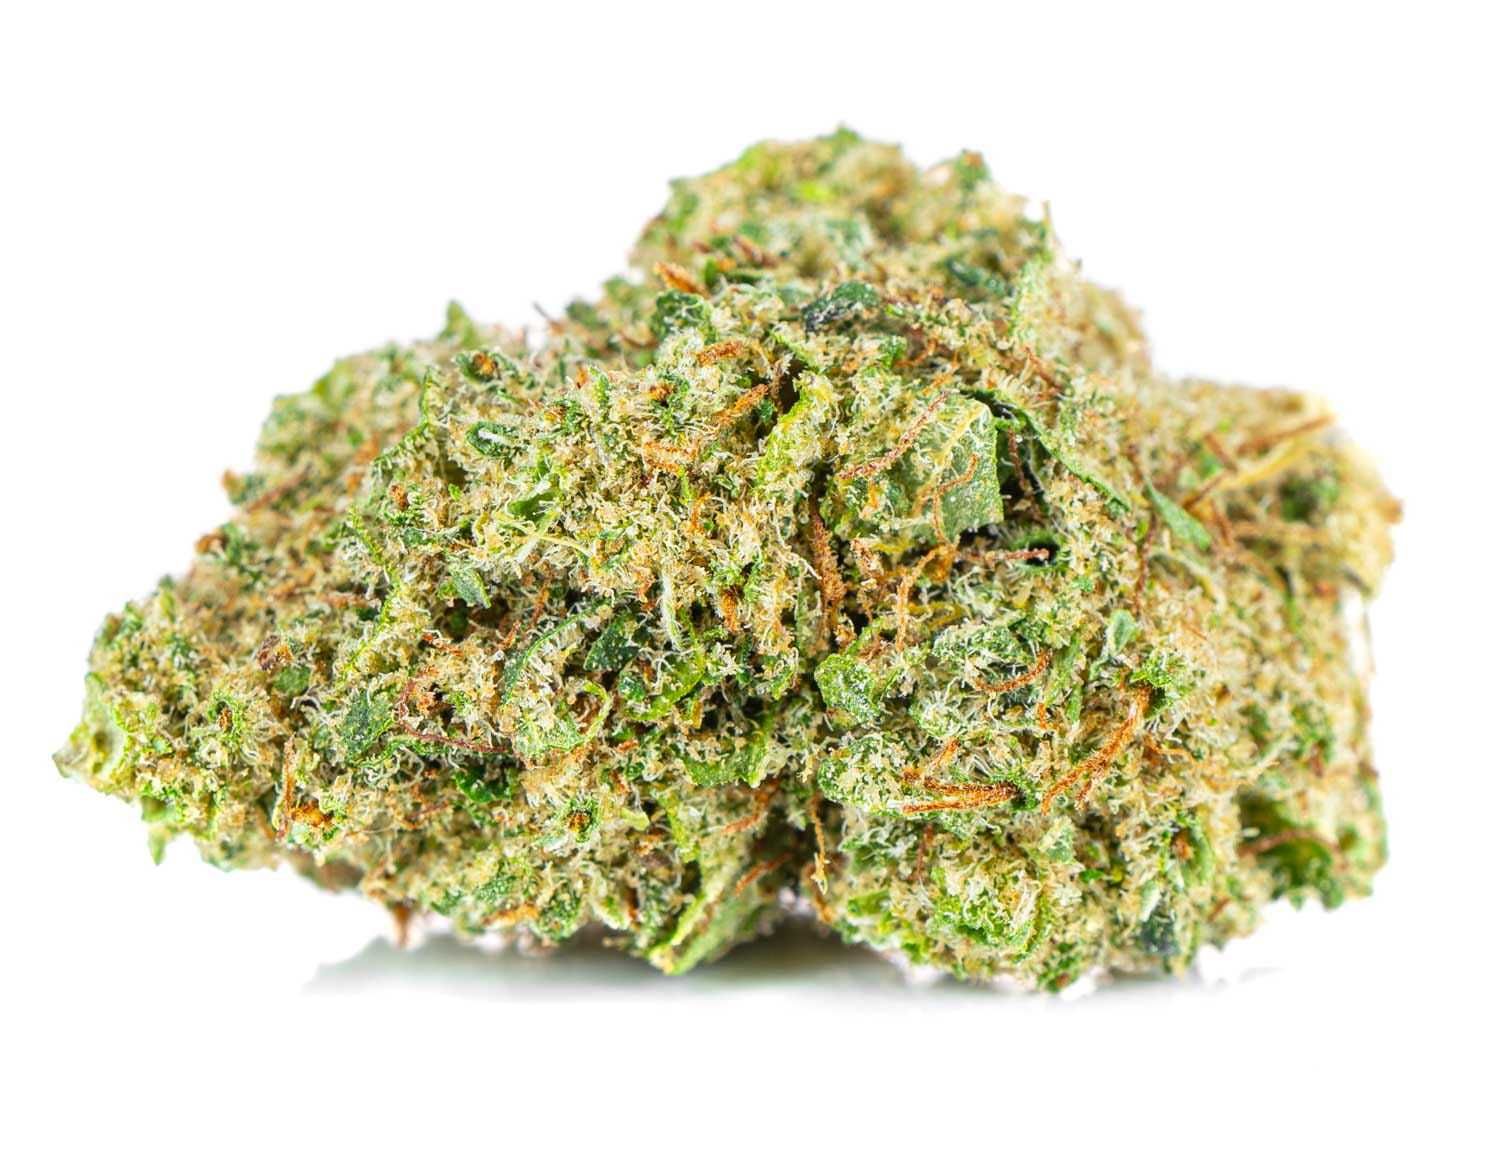 Sklep Mary Jane | Lemon Haze do 30% CBD Legalny Susz Konopny | 1 gram